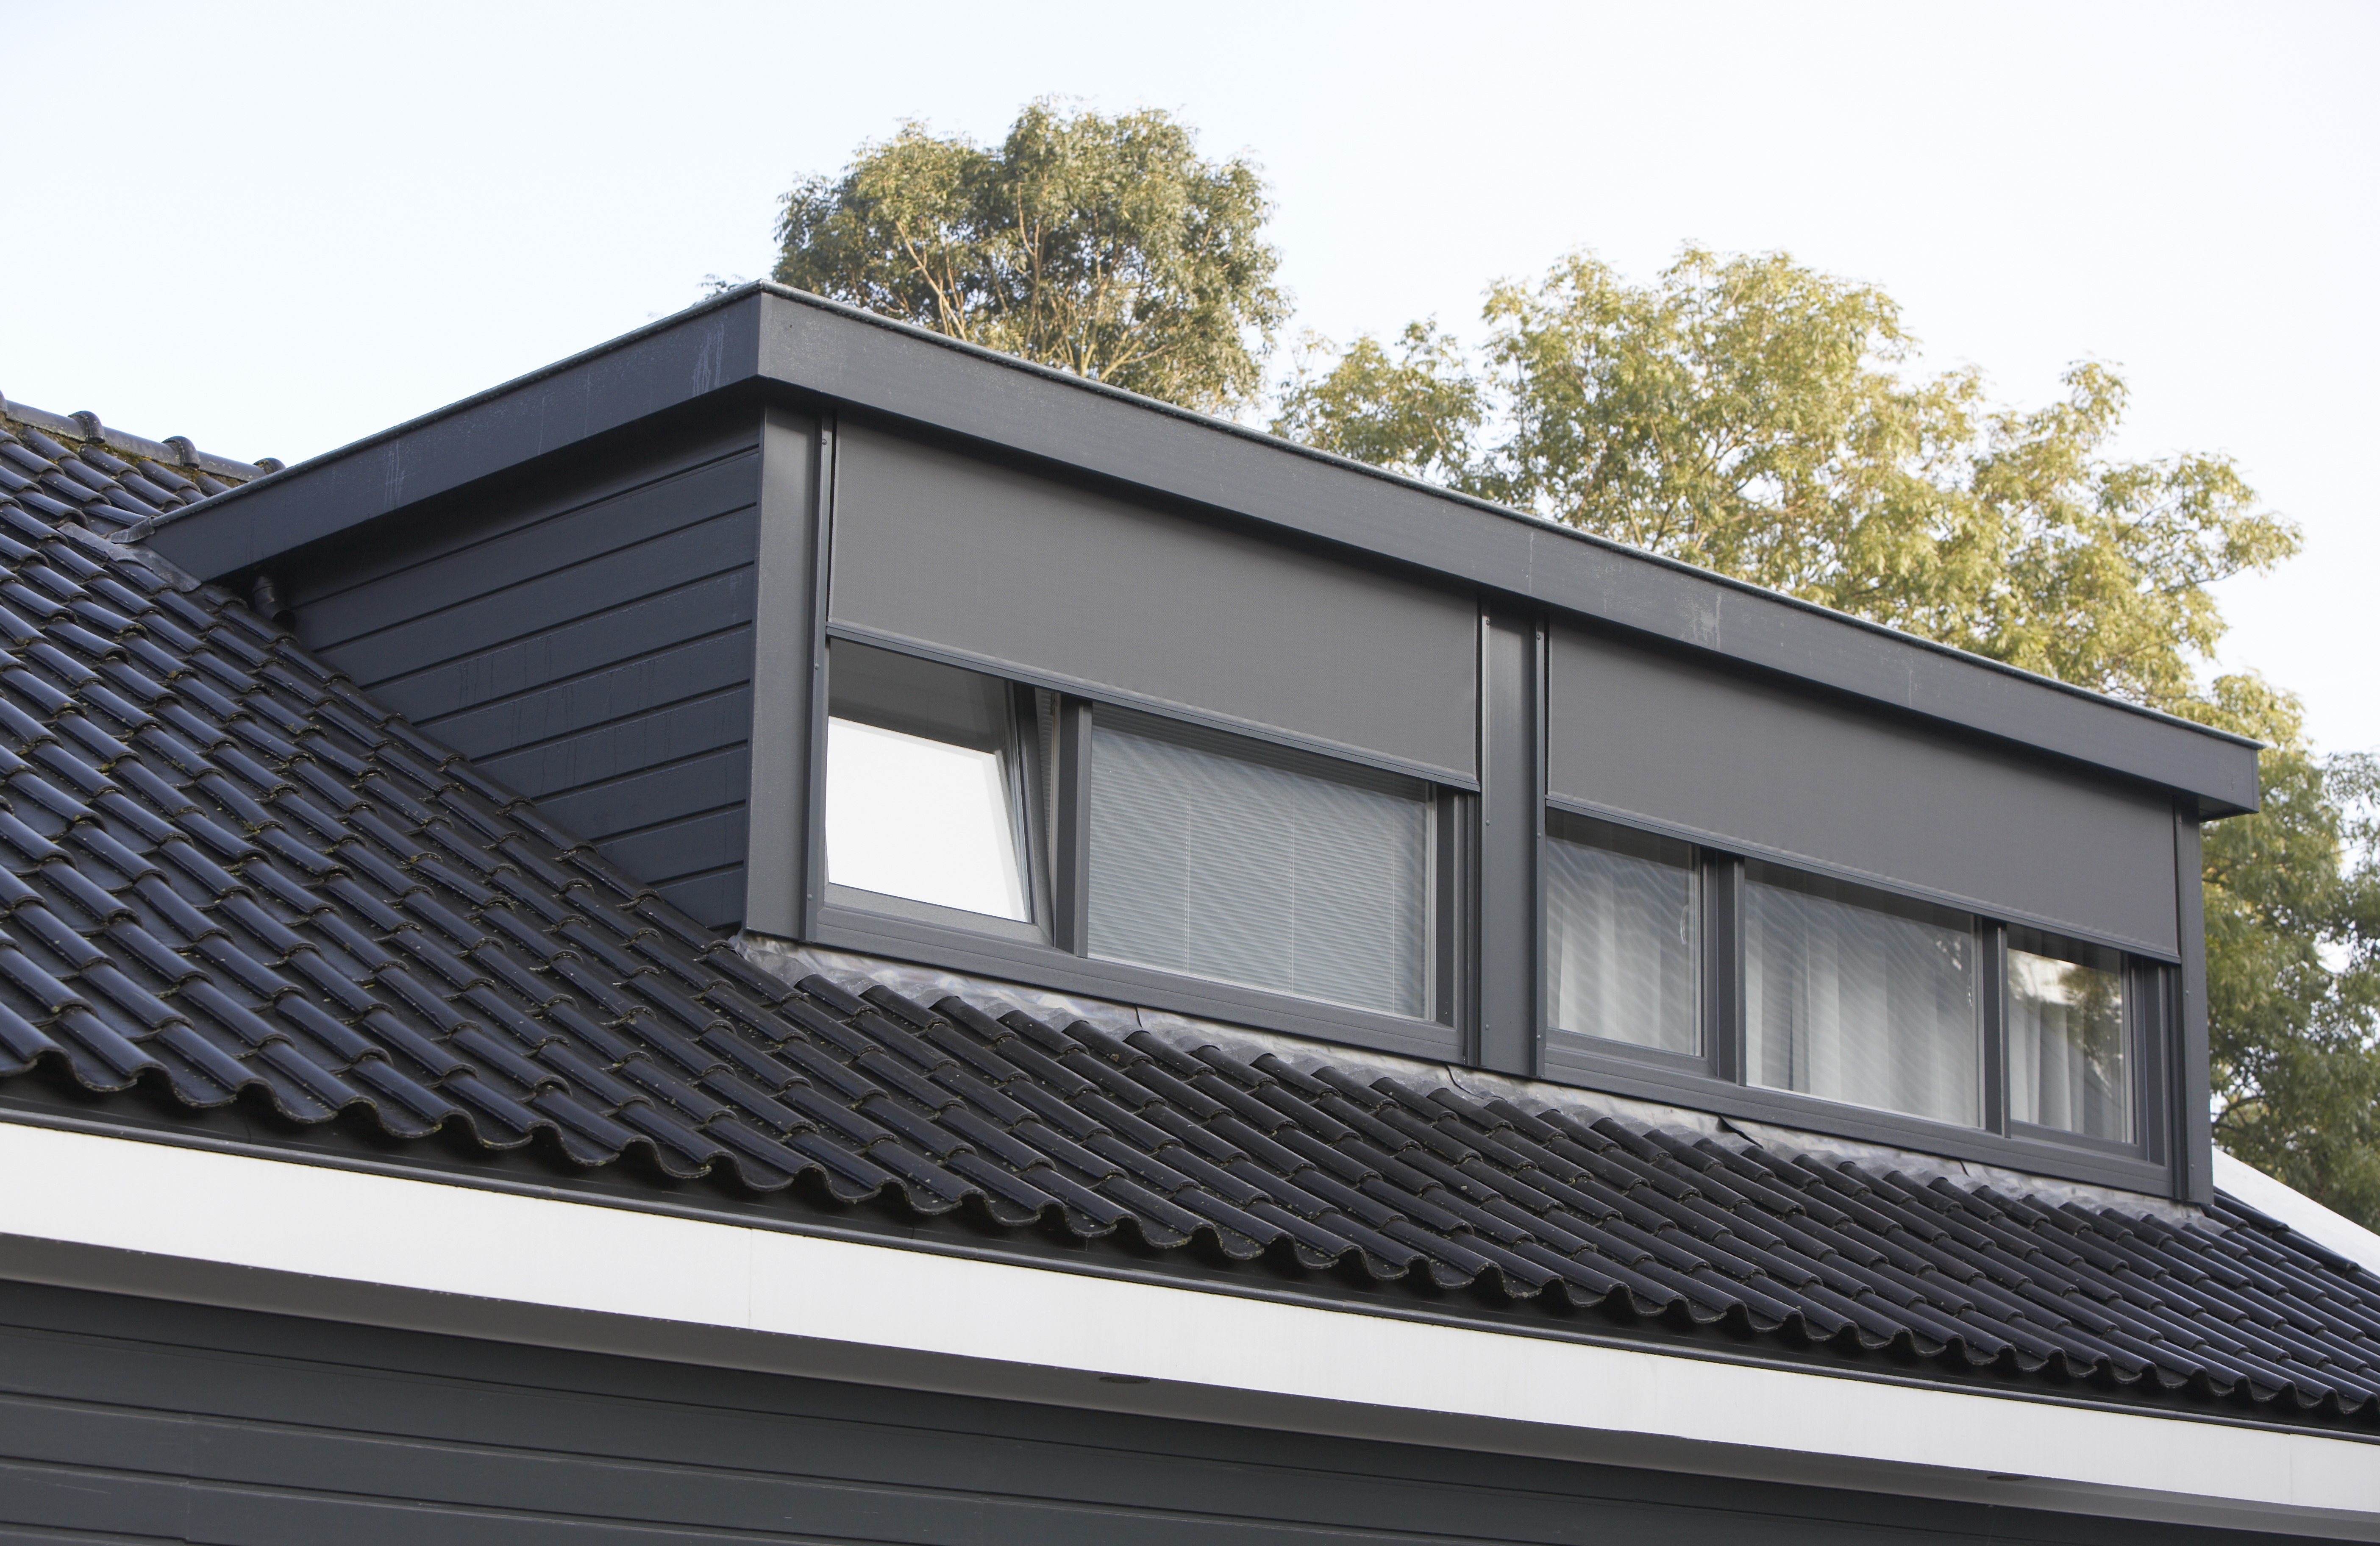 Zwarte dakkapel vanaf 6 meter, met houtnerf op zwart dak. Zwarte rolluik voor het raam voor zonwering.